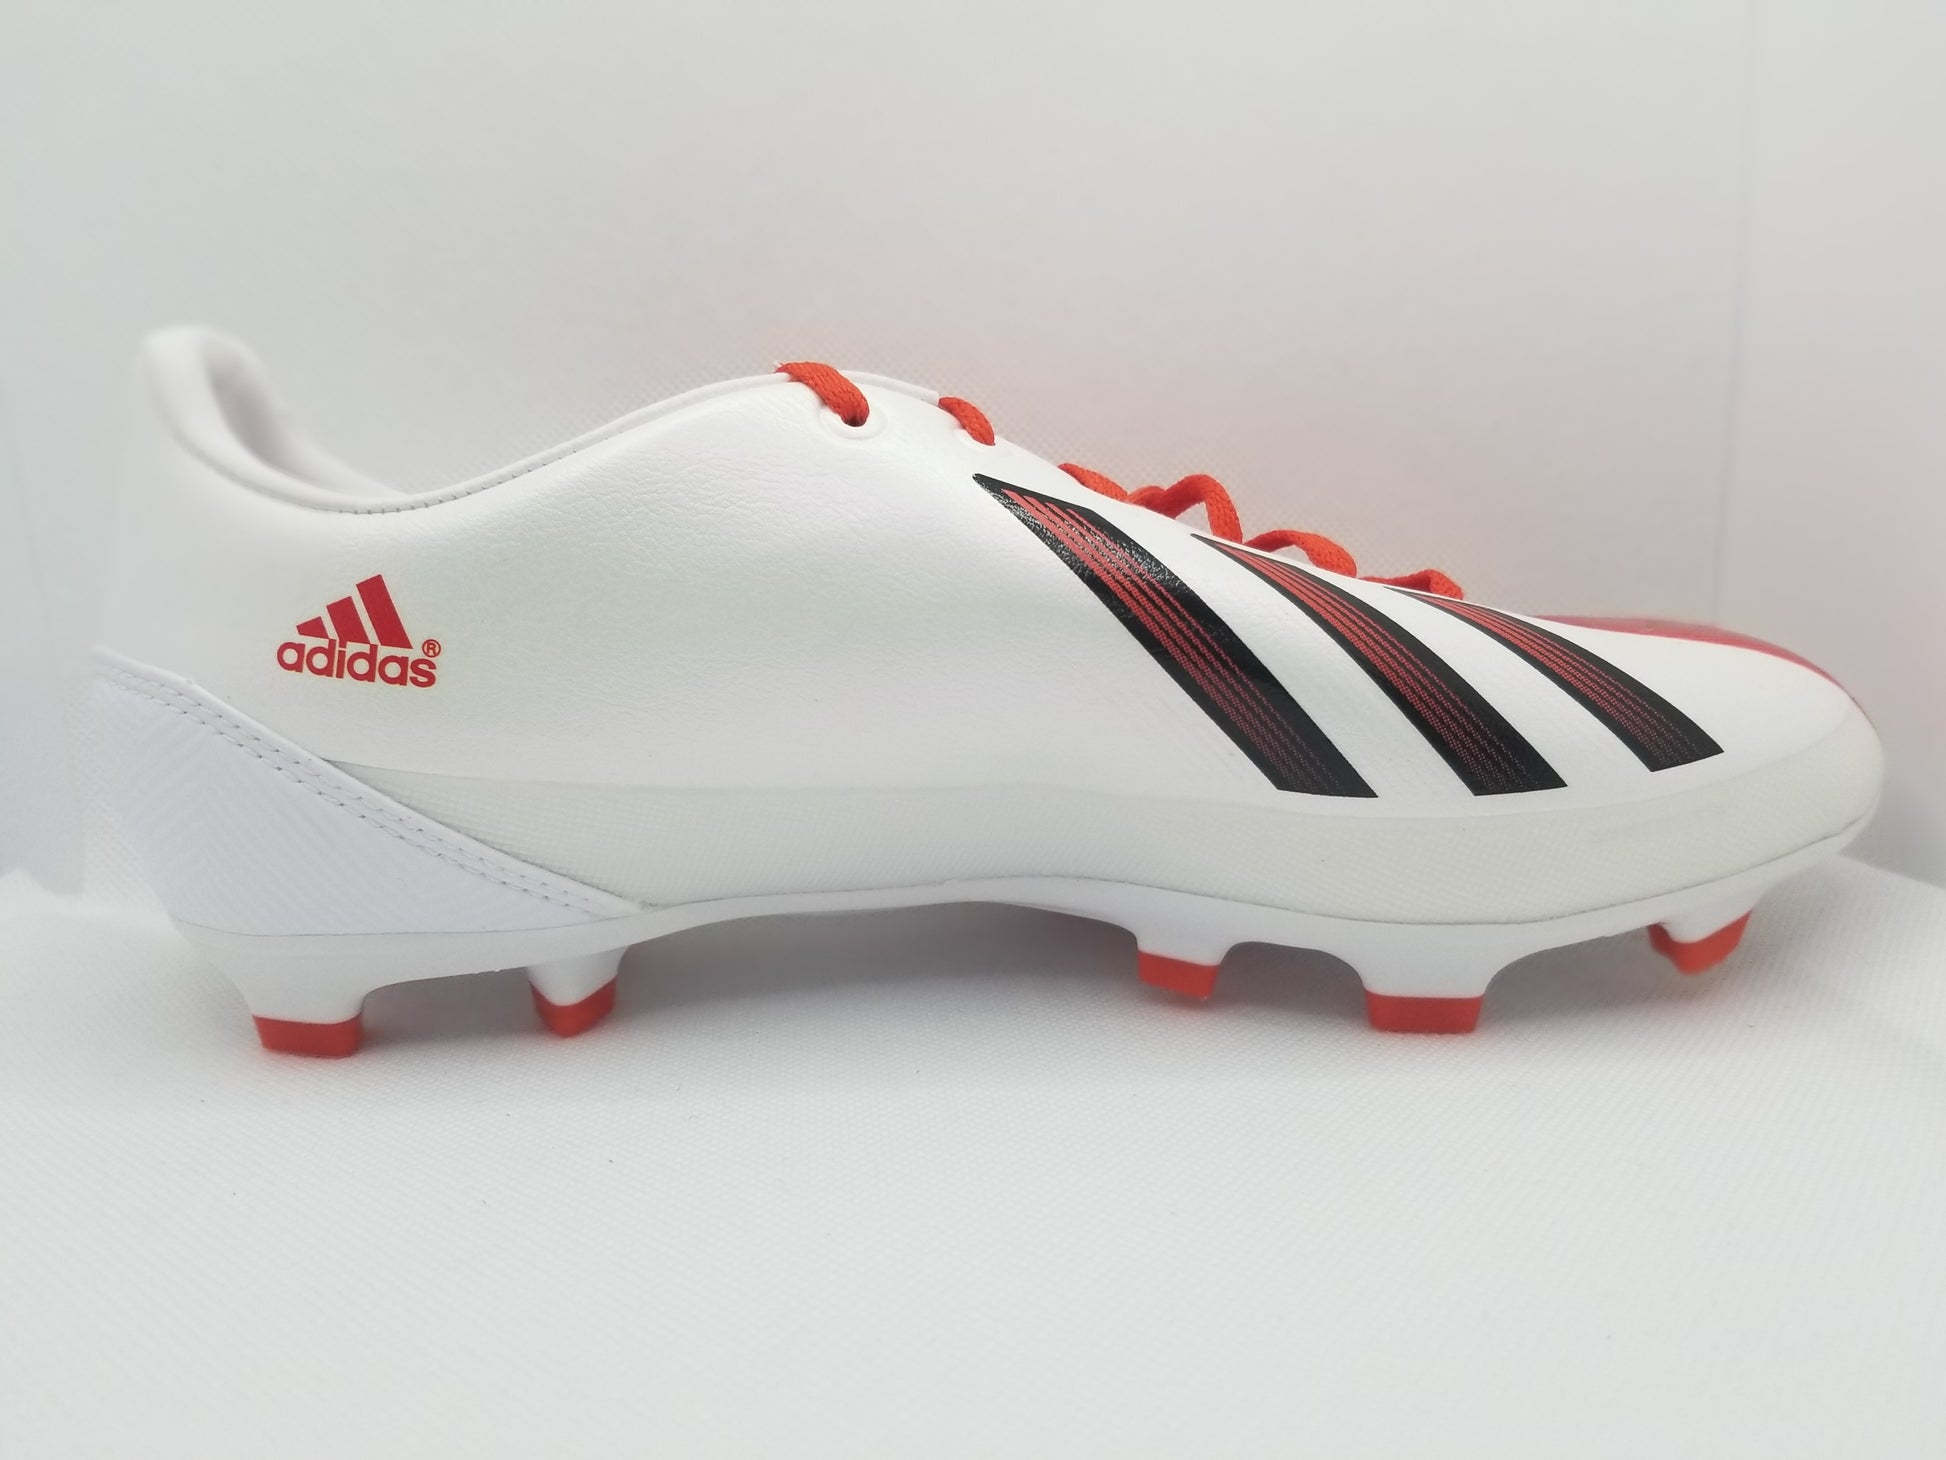 Adidas F30 TRX Messi FG – Boots